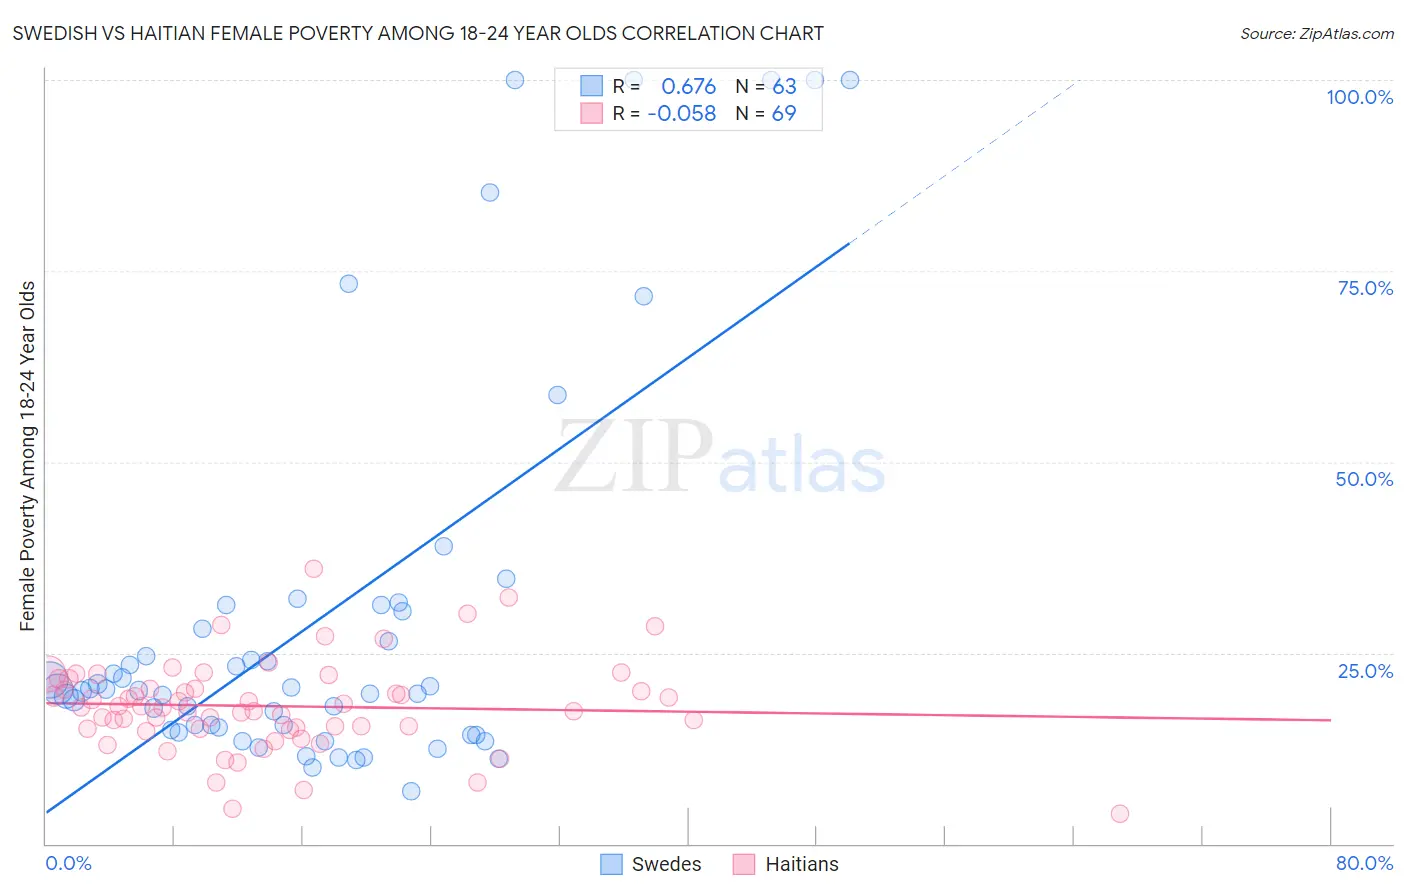 Swedish vs Haitian Female Poverty Among 18-24 Year Olds